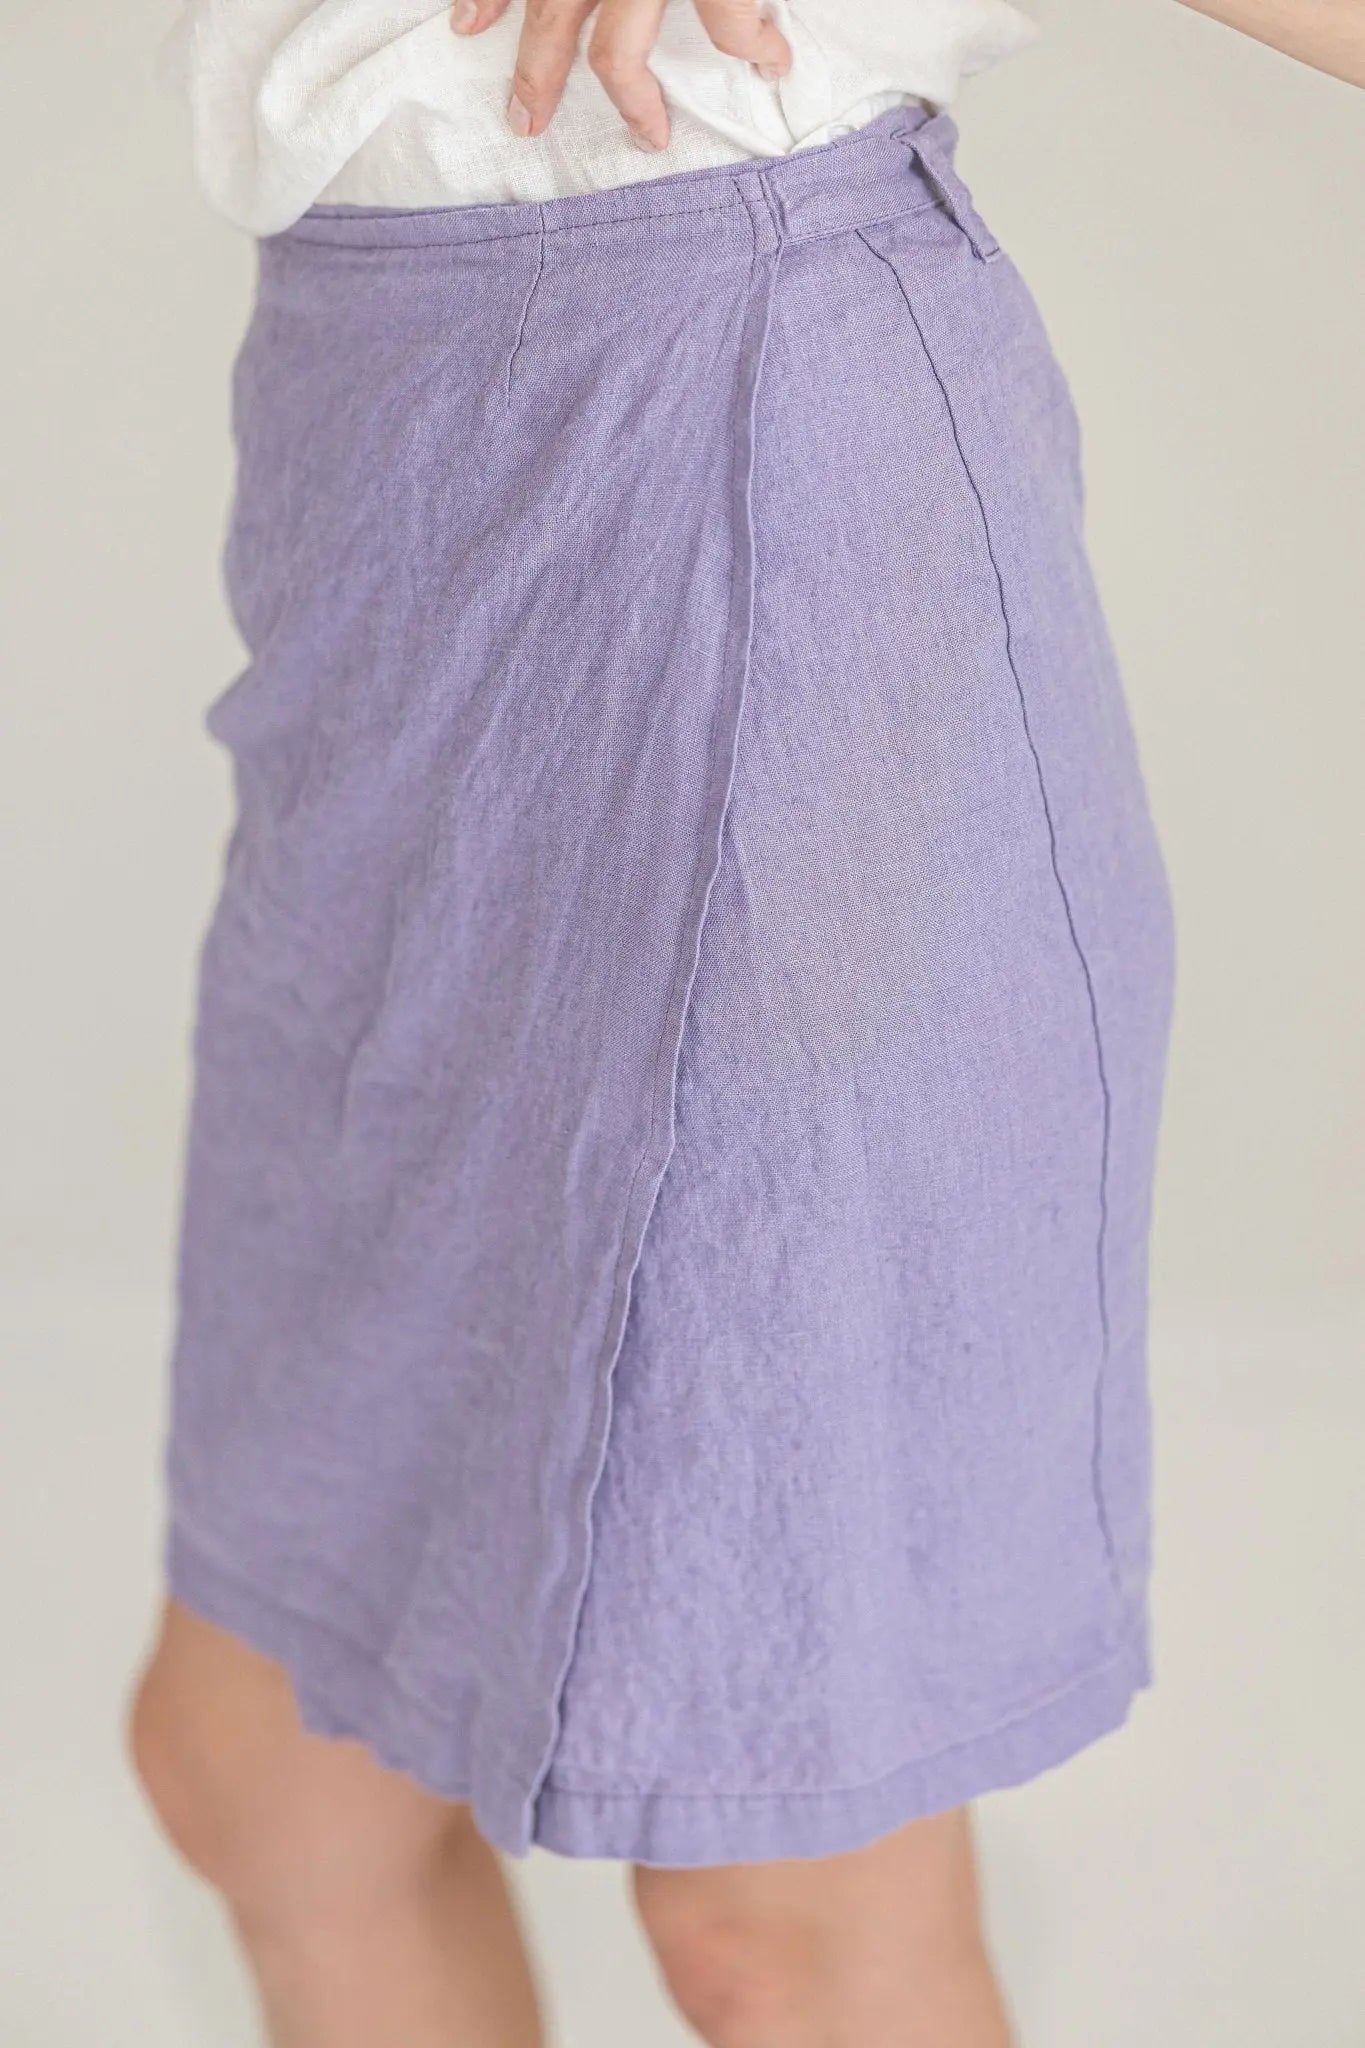 Wrap Summer Linen Skirt - Epic Linen luxury linen